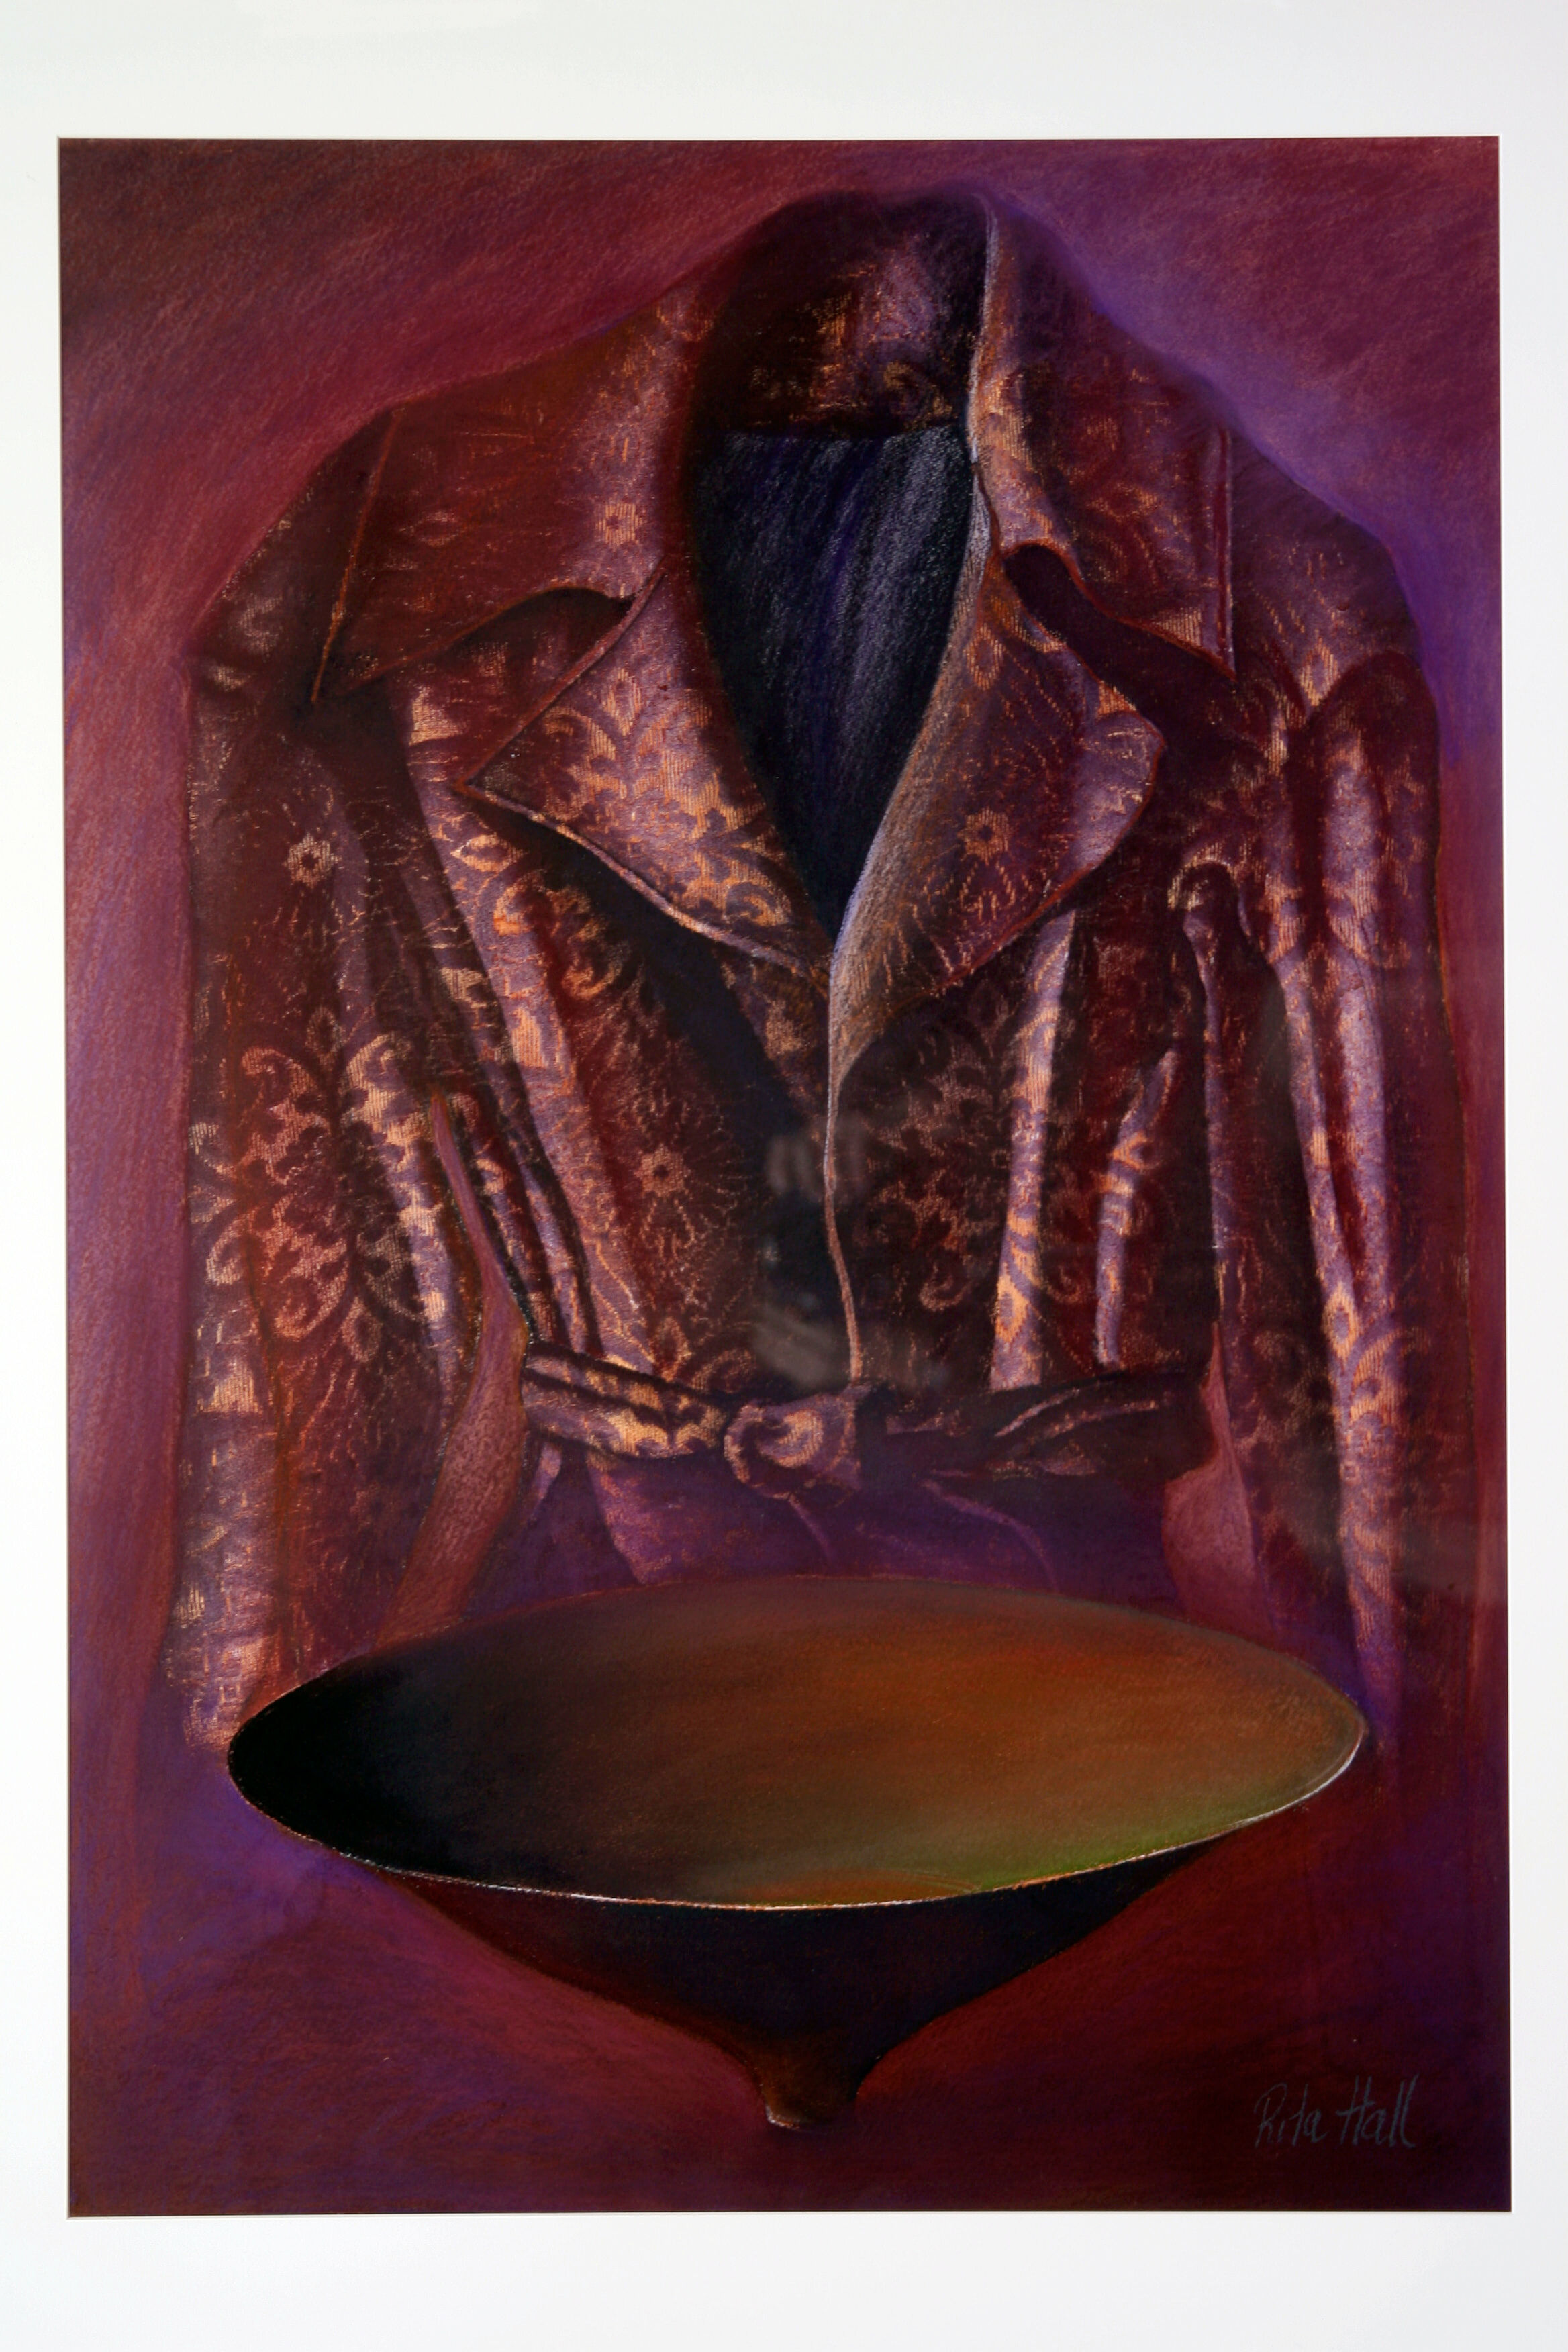 Purple Jacket with cole bowl 2000 100x75cm collograph & pastel